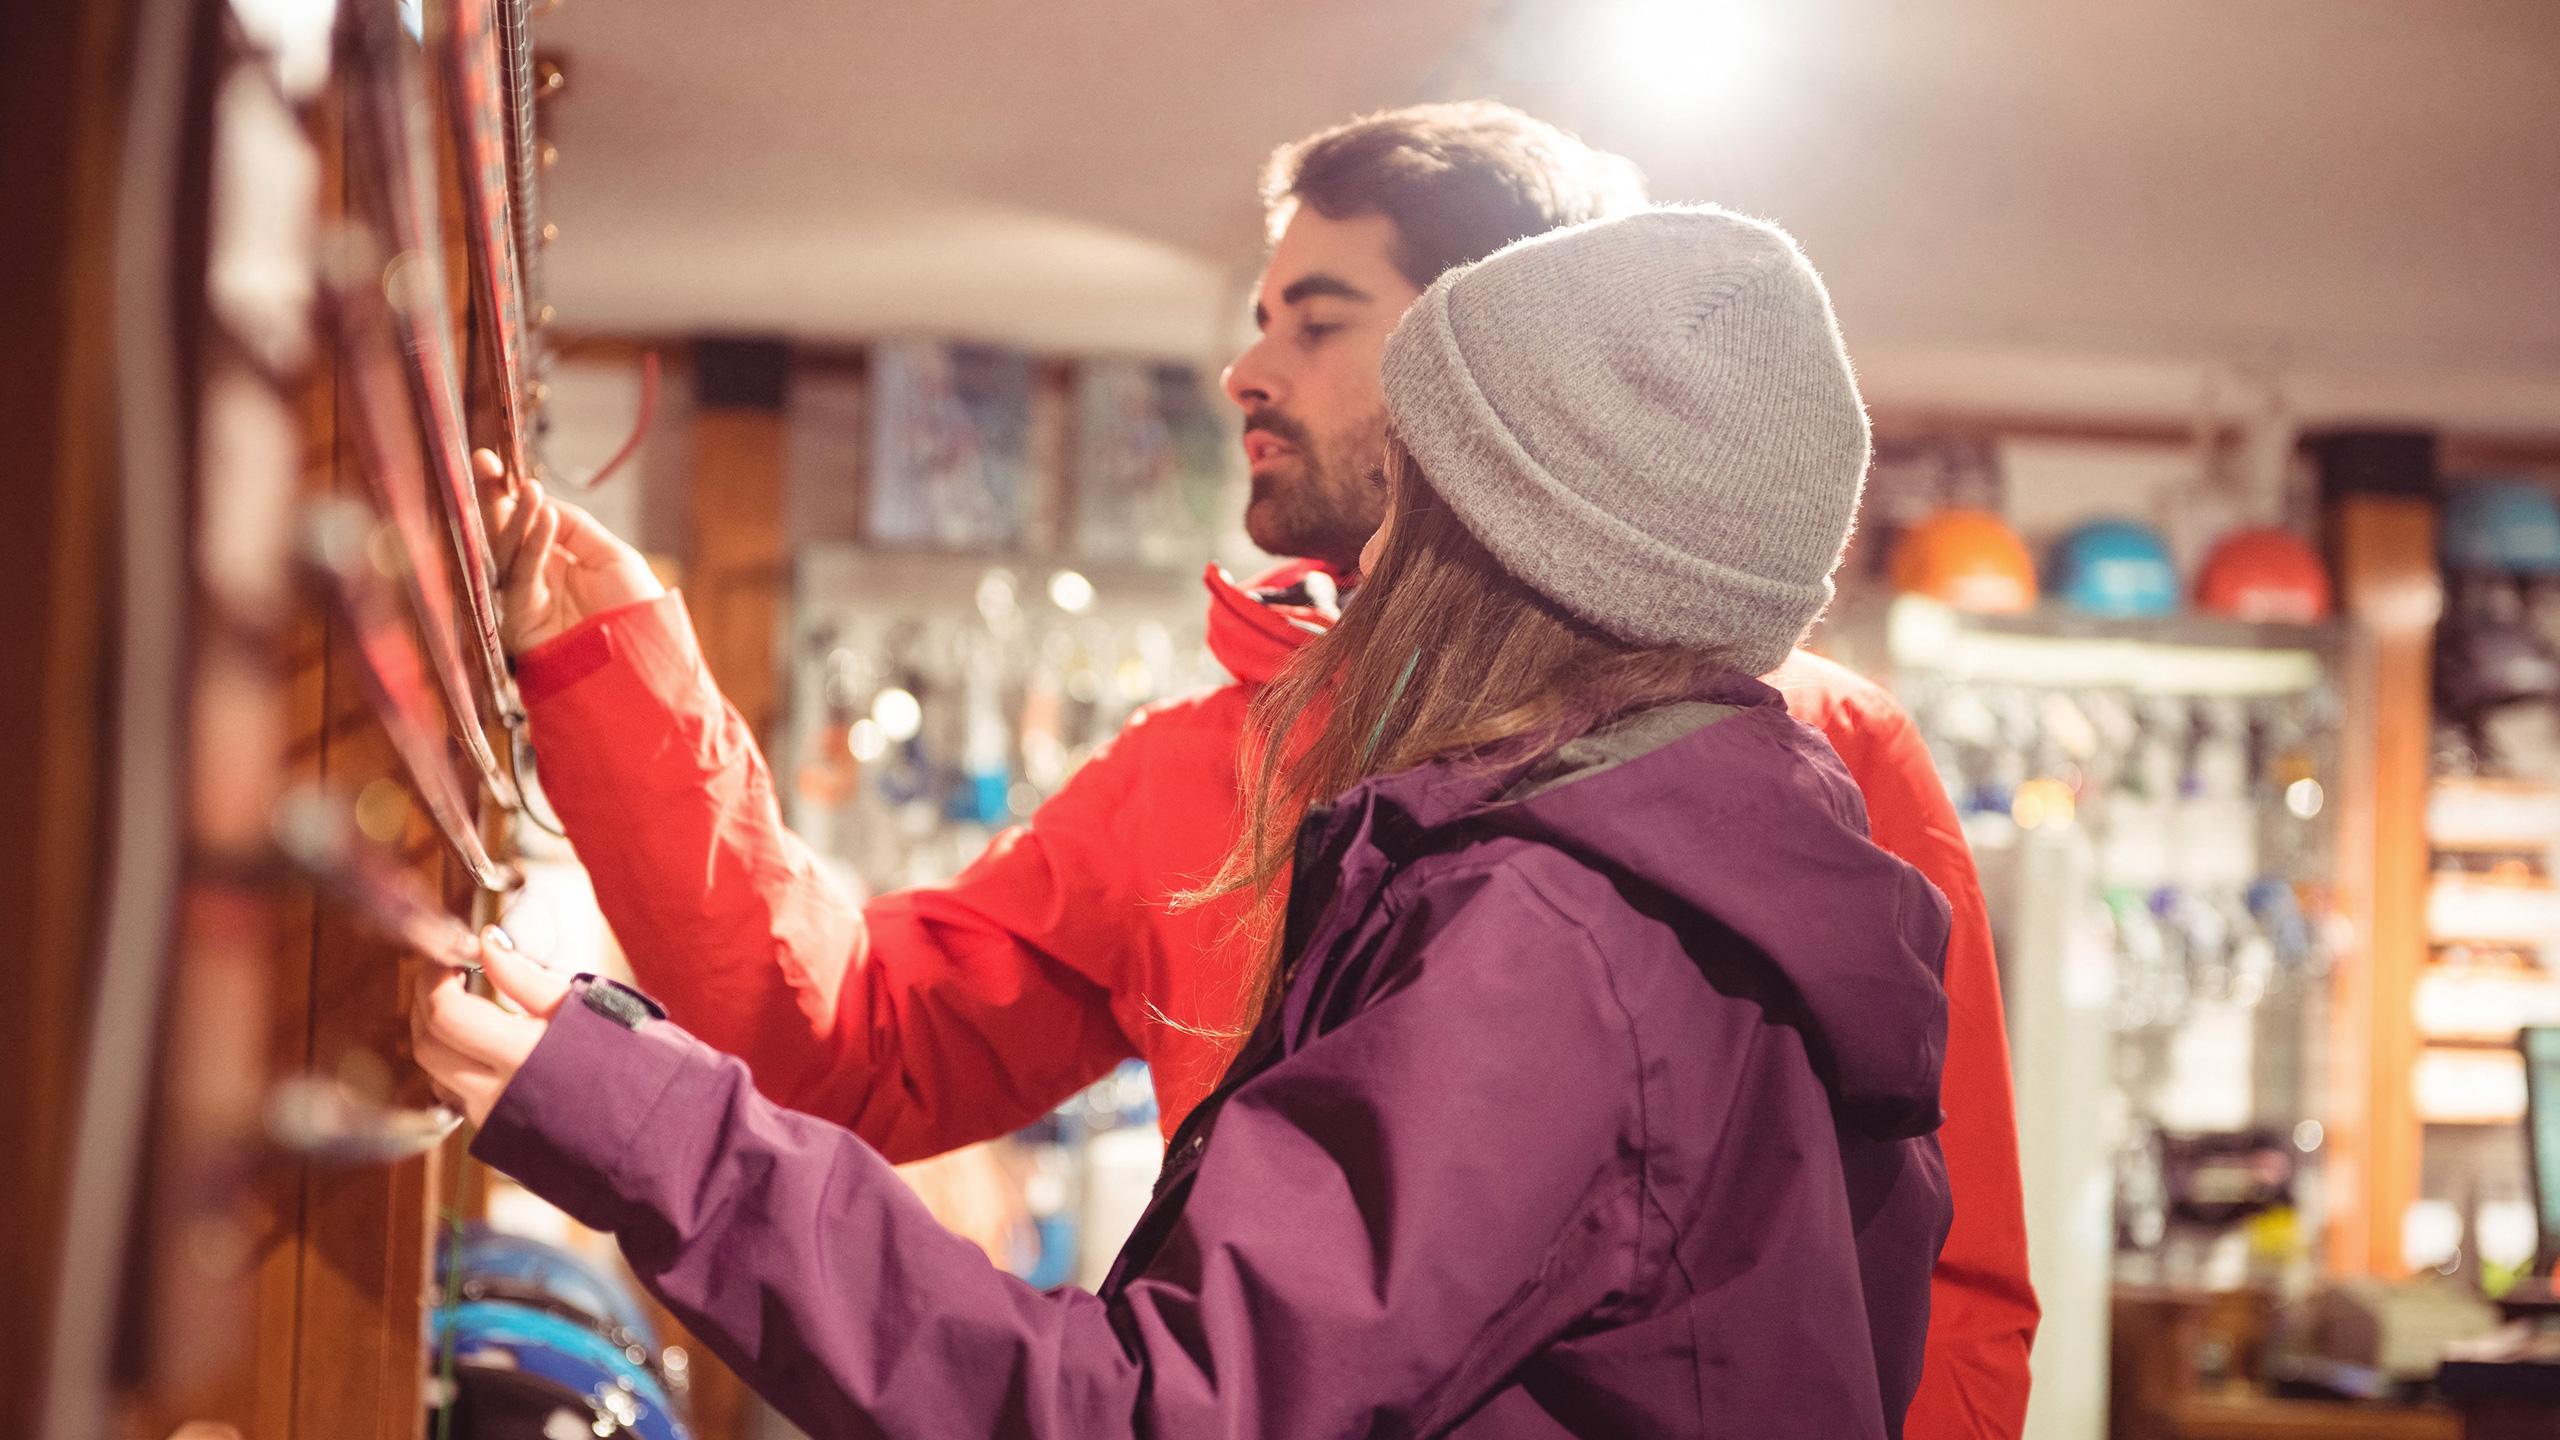 Deux personnes sont dans une boutique en train de choisir du matériel de ski - Investir proche des commodités